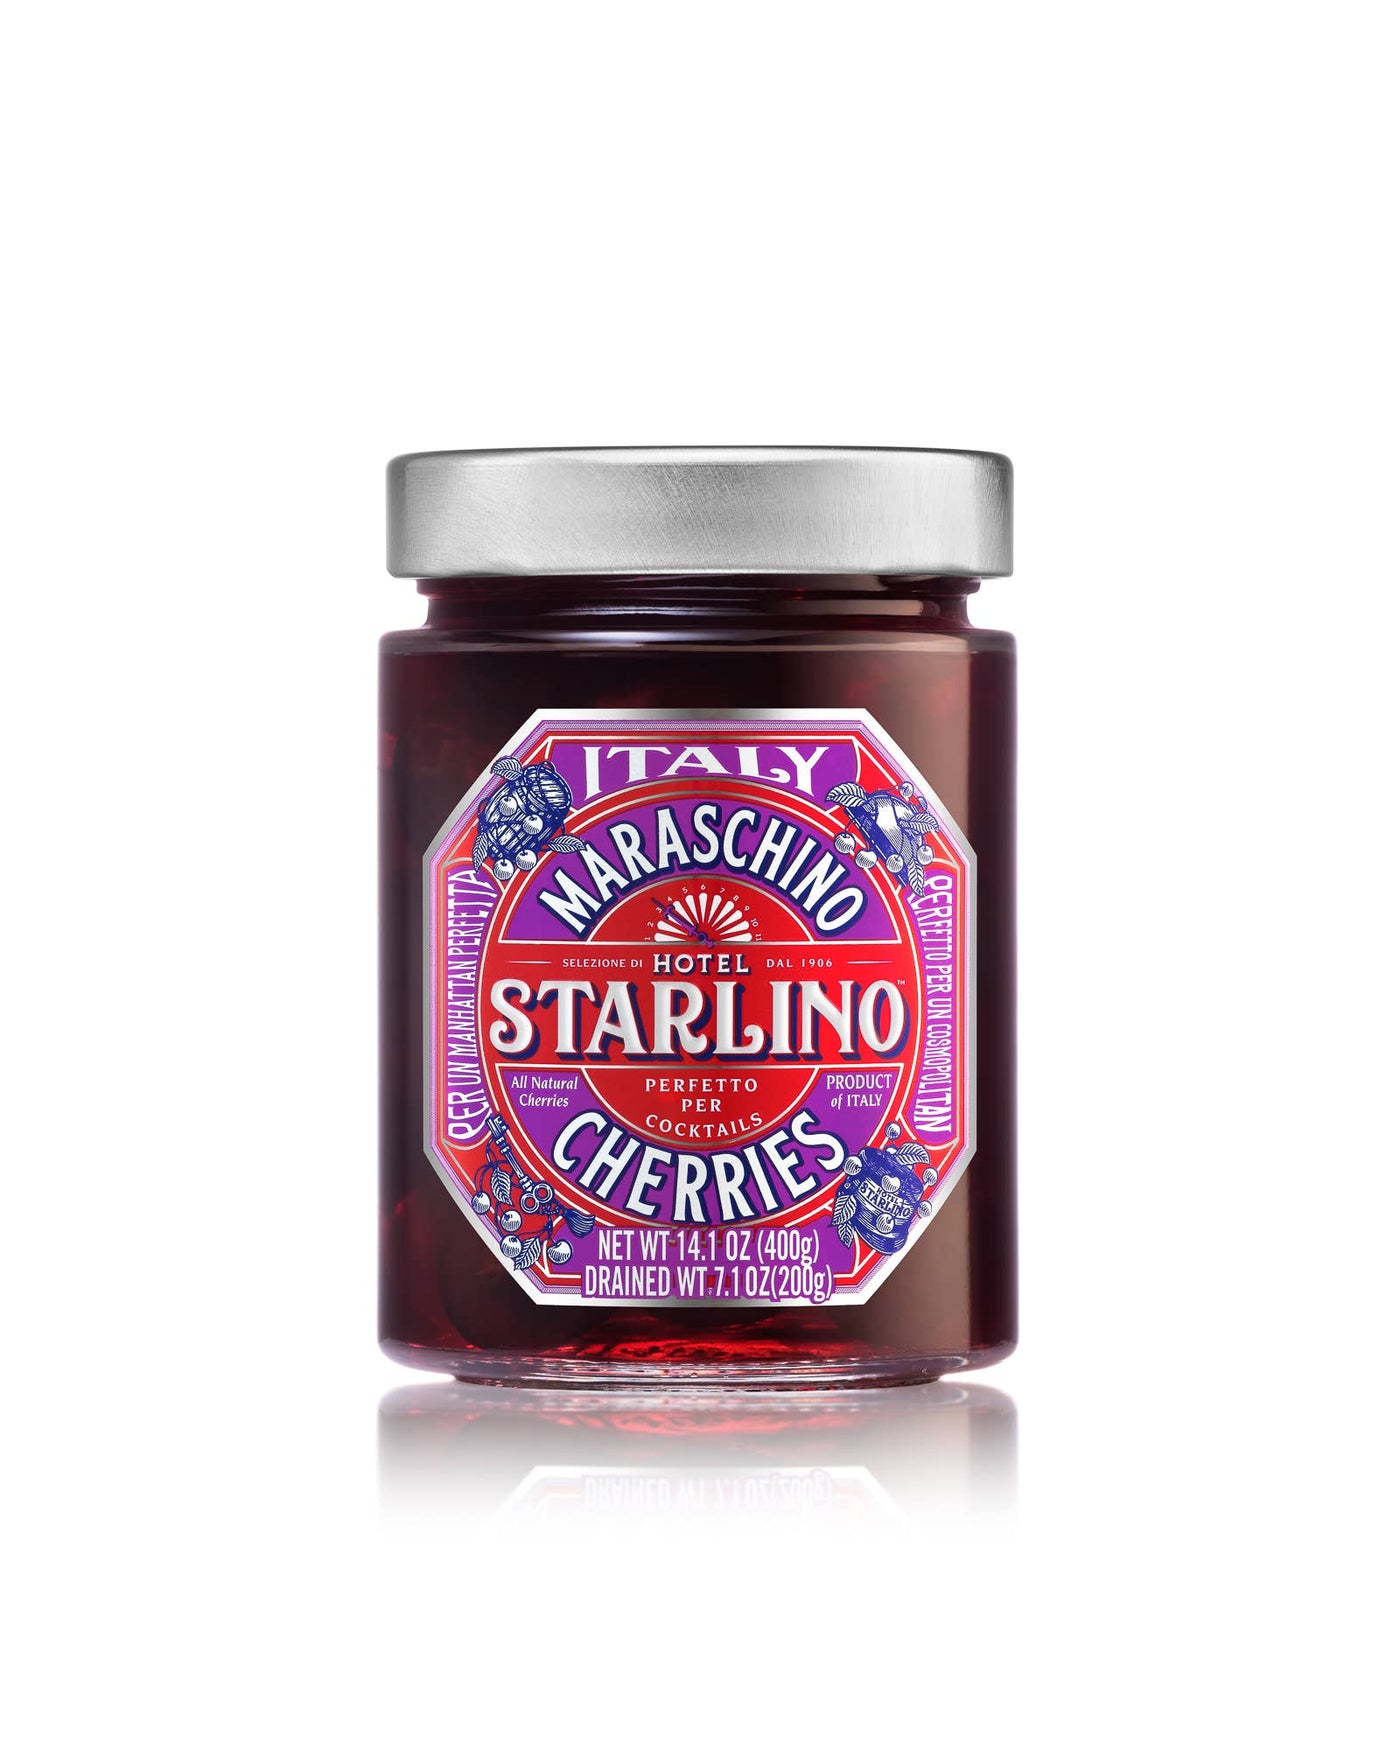 Italian Maraschino Cherries - 400g Jars